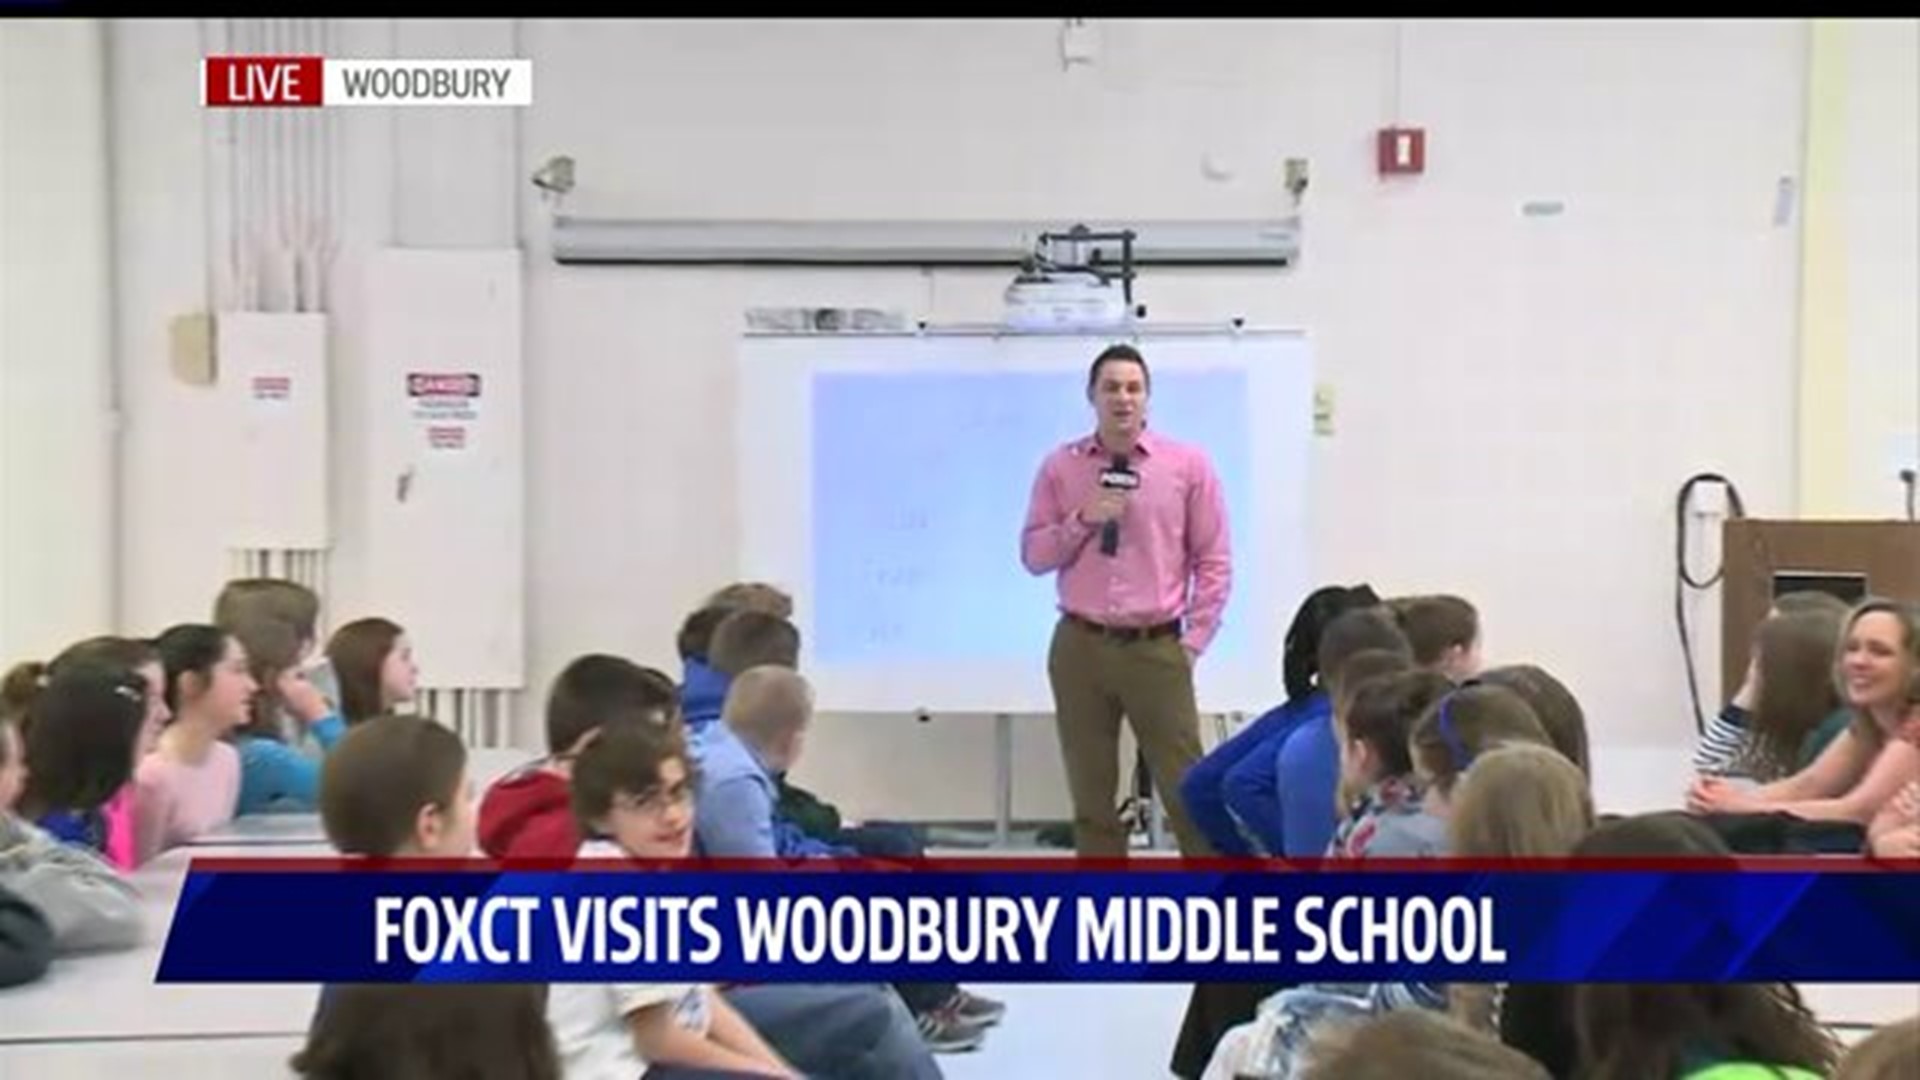 Dan visits Woodbury Middle School